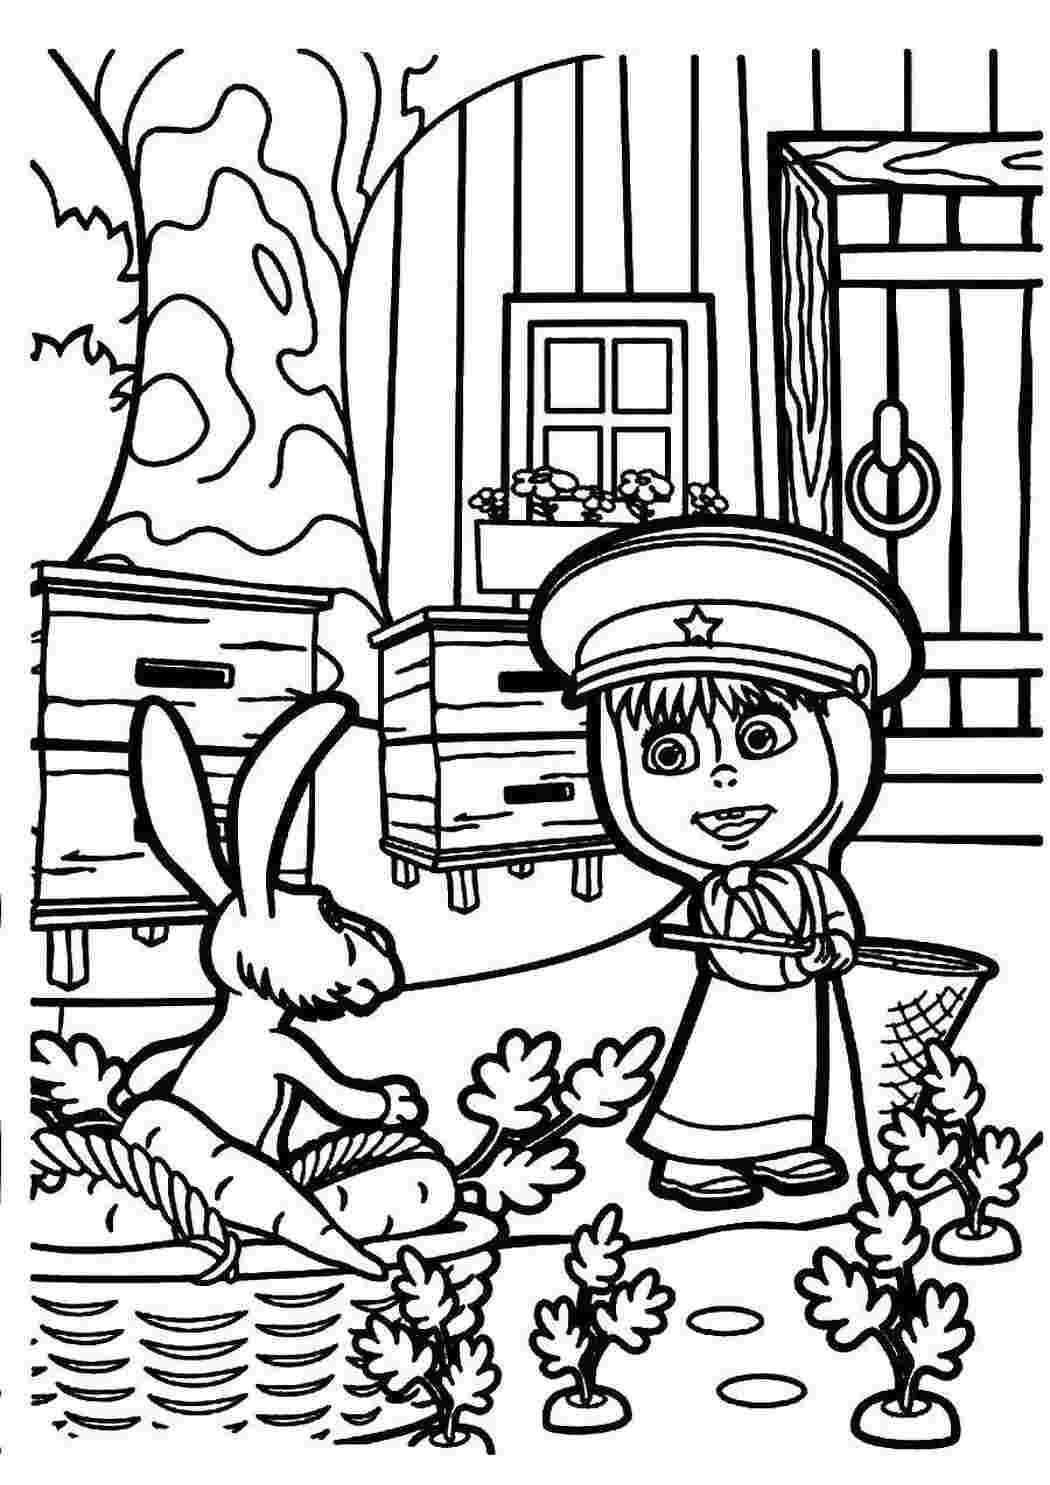 Раскраски Раскраски для детей про озорную Машу из мультфильма Маша и медведь  Маша охотится на зайца